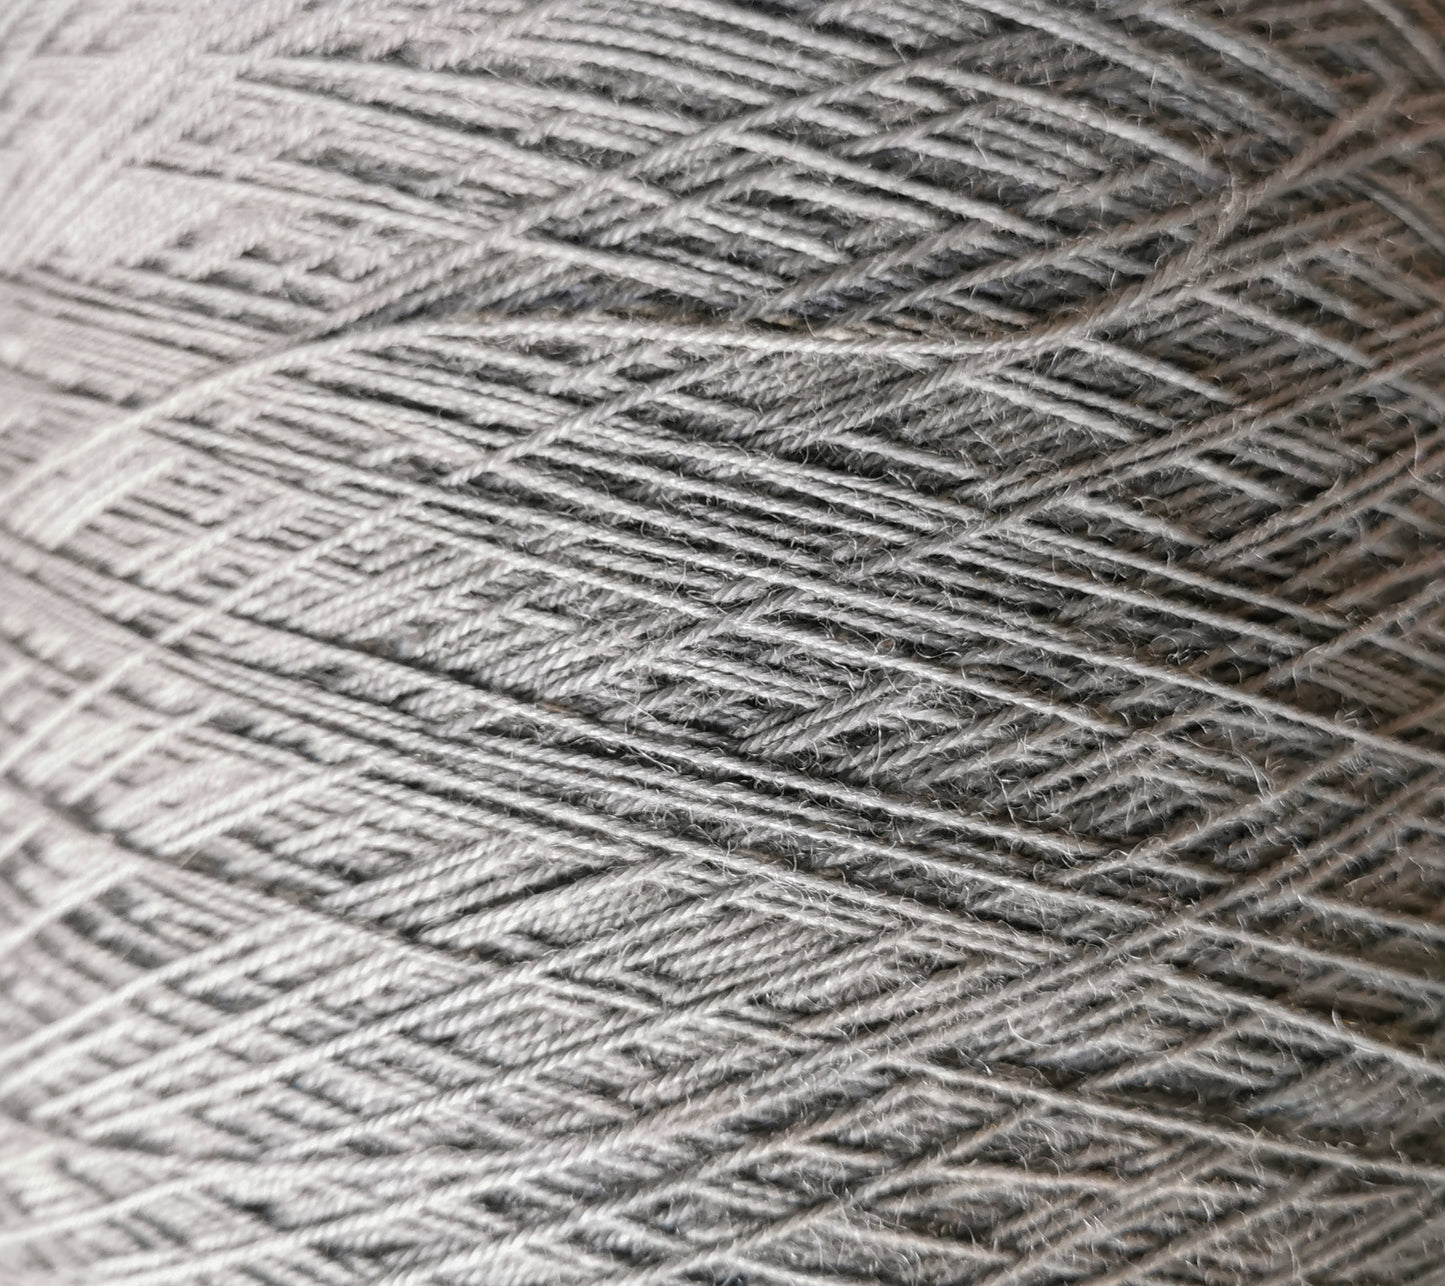 wool/nylon blend yarn in grey